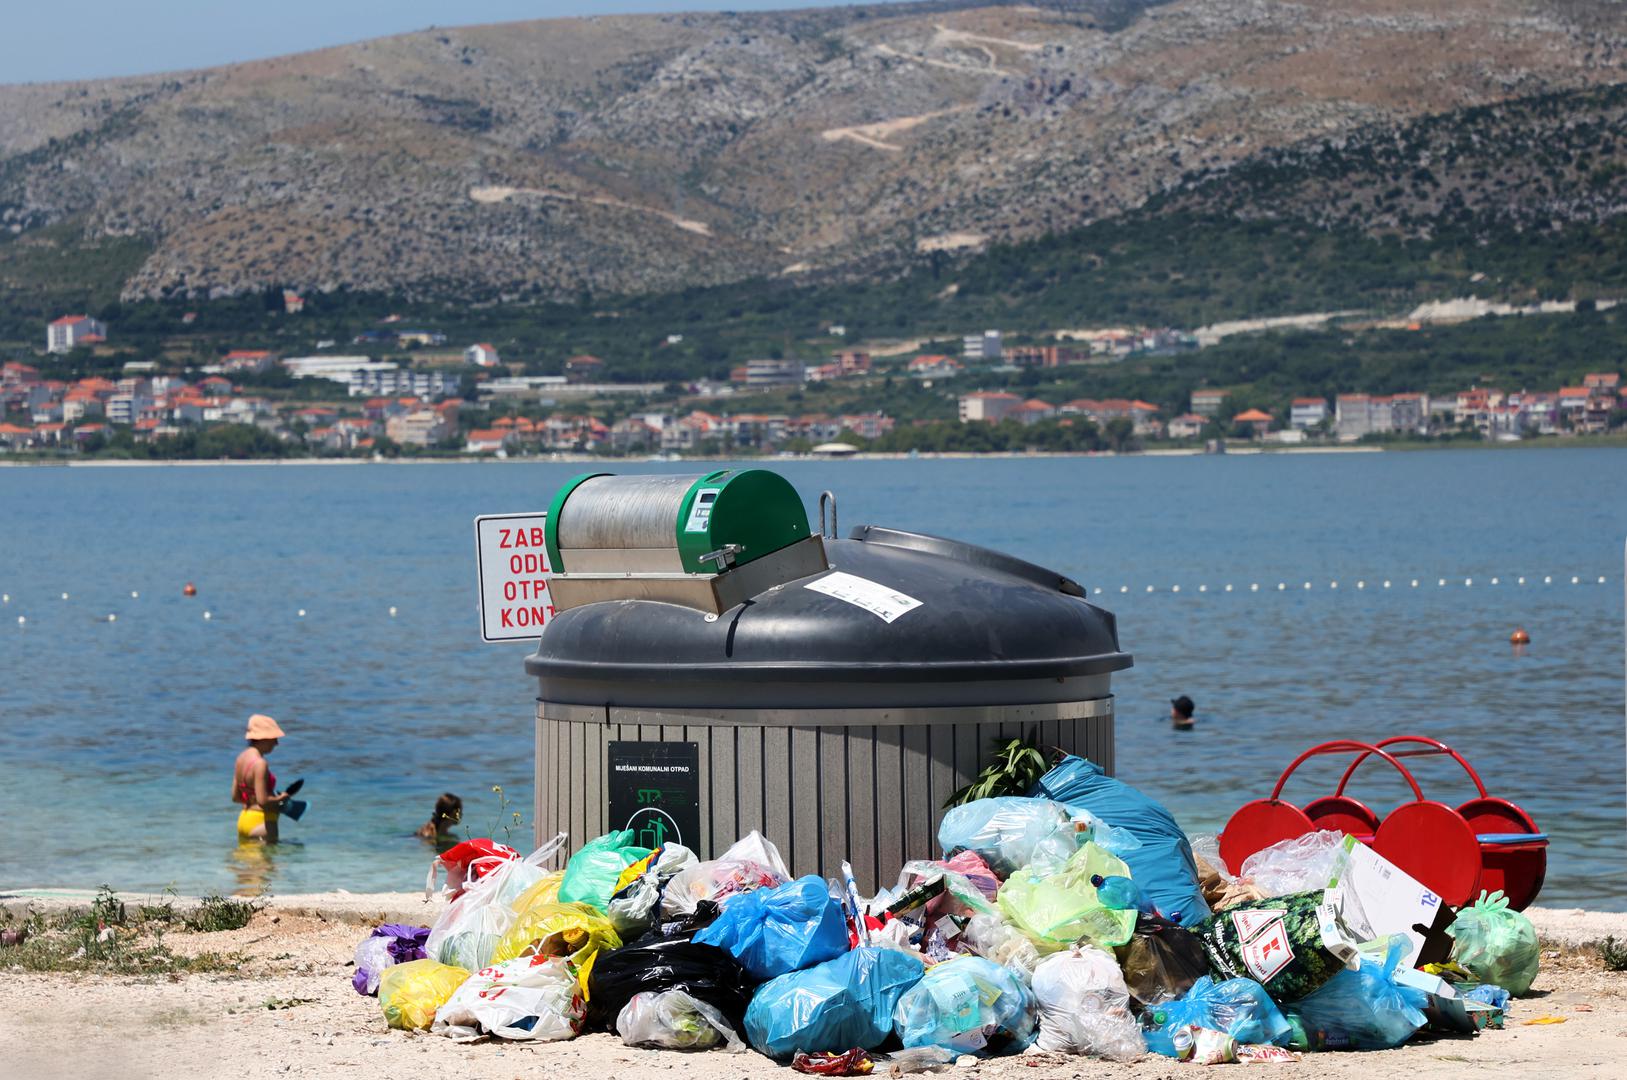 Iz dana u dan postaje sve jasnije da Hrvatska ima sve veći problem sa smećem. Odlaganje otpada očito ne funkcionira. 